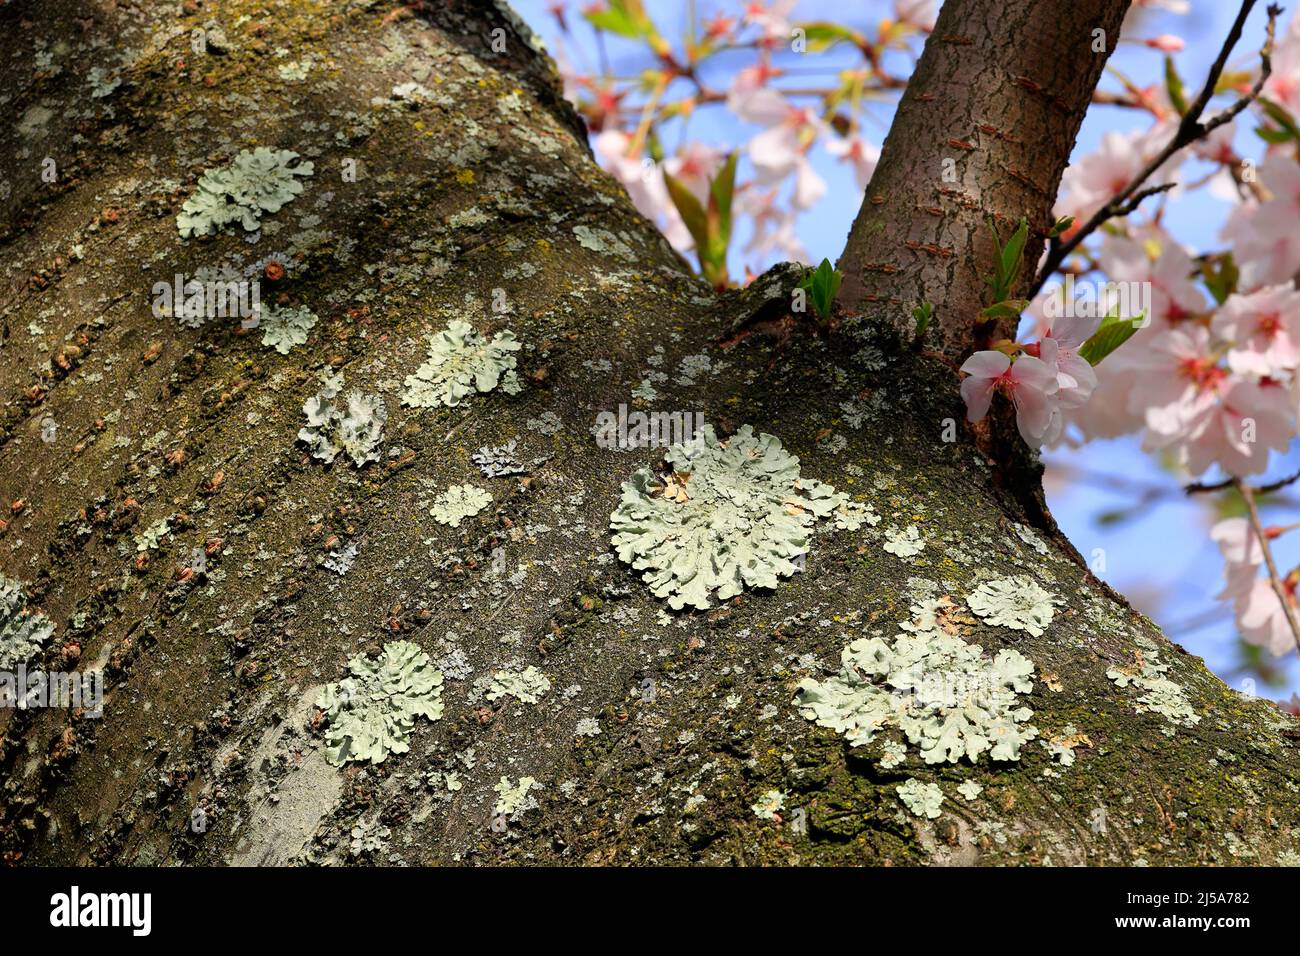 Licheni di Greenshield, Flavoparmellia caperata, licheni foliosi che crescono sulla corteccia di un ciliegio in piena fioritura. Foto Stock